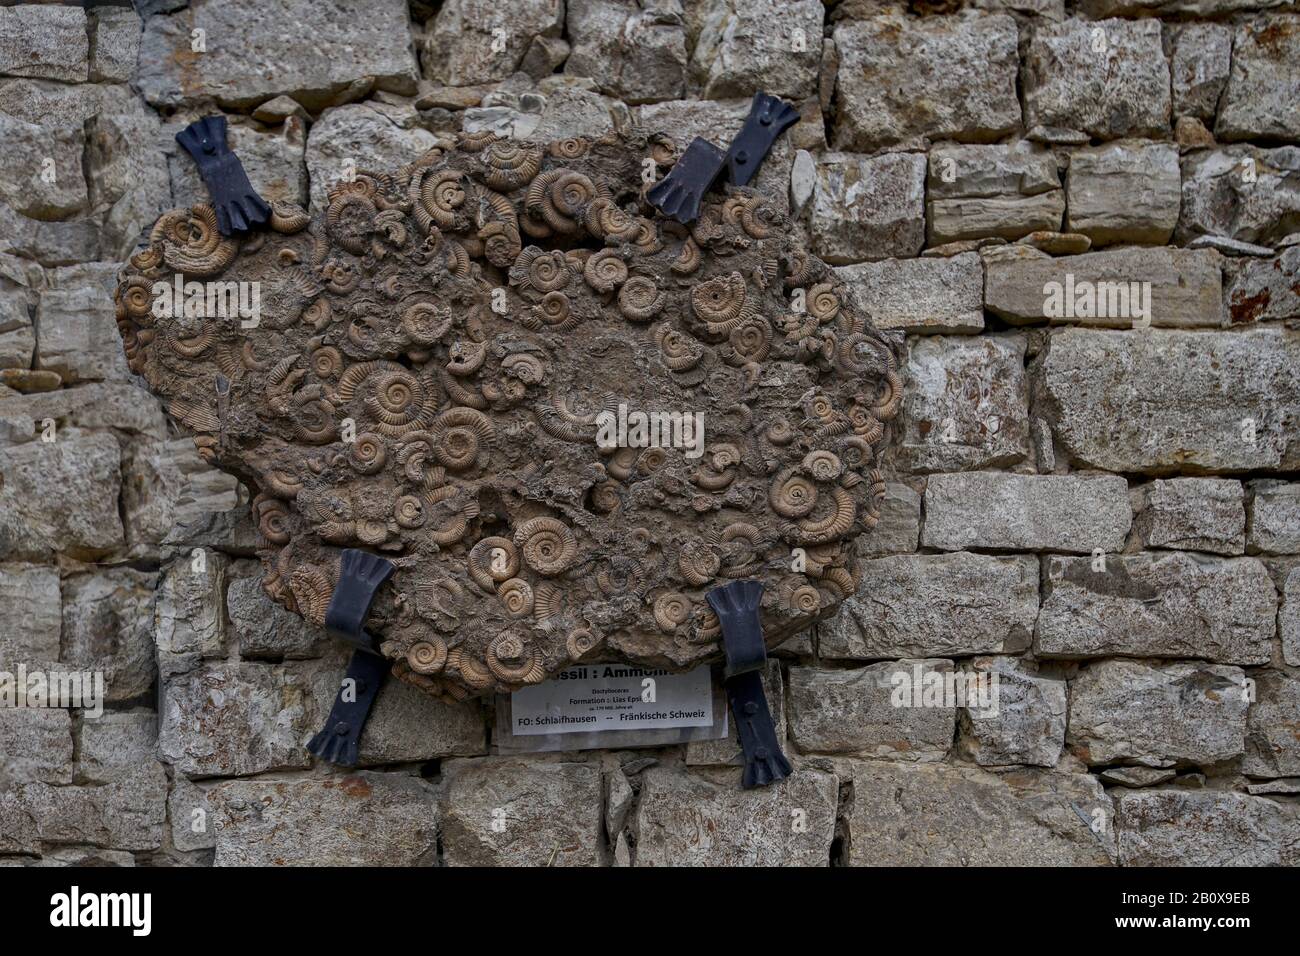 Ammoniten un einer Bruchsteinmauer Foto Stock